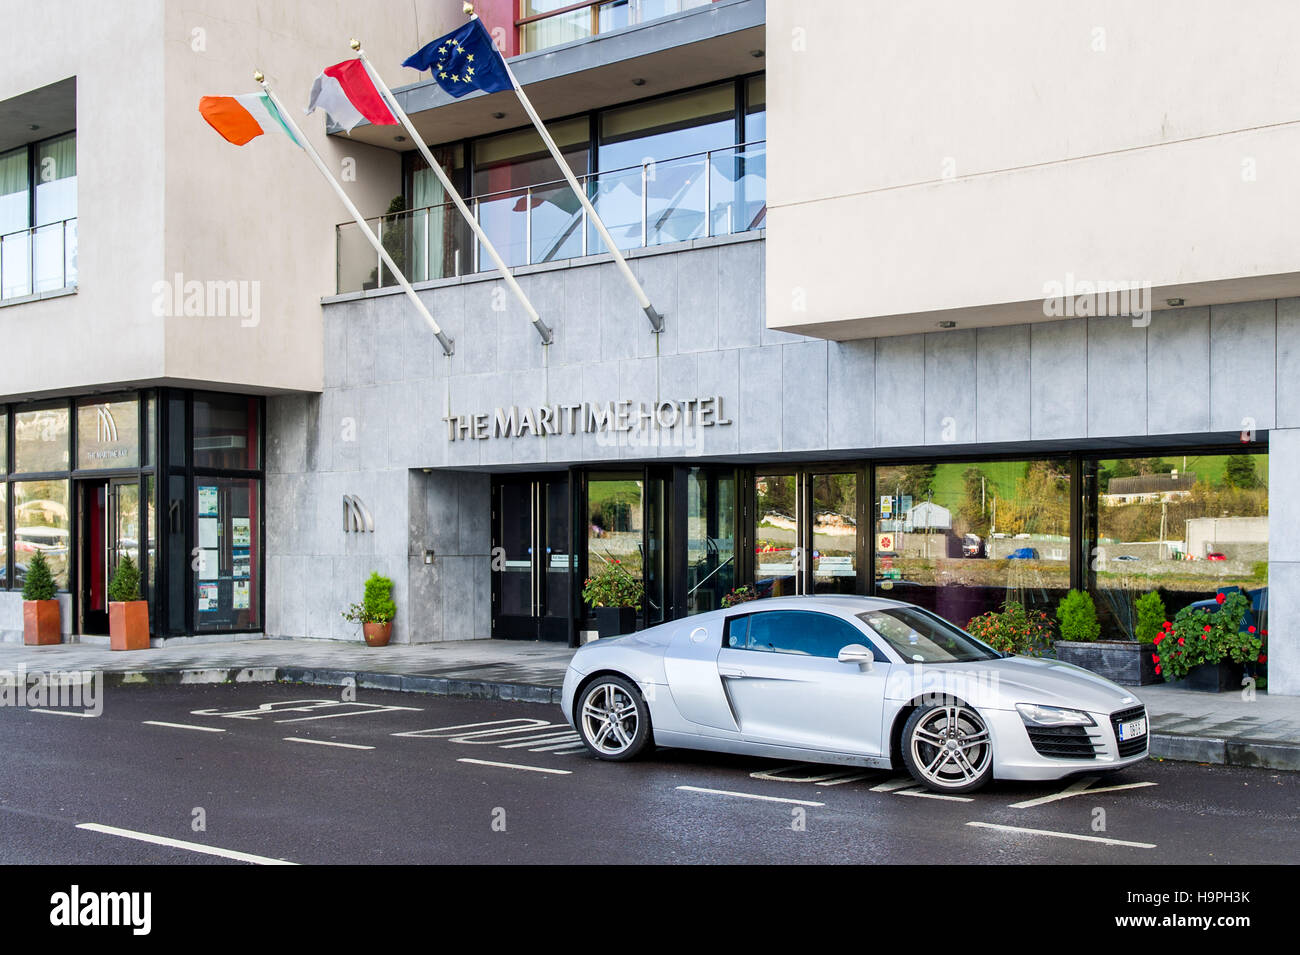 De couleur argent Audi R8 sports voiture garée à l'extérieur de l'Hôtel Maritime, Bantry, dans le comté de Cork, Irlande. Banque D'Images